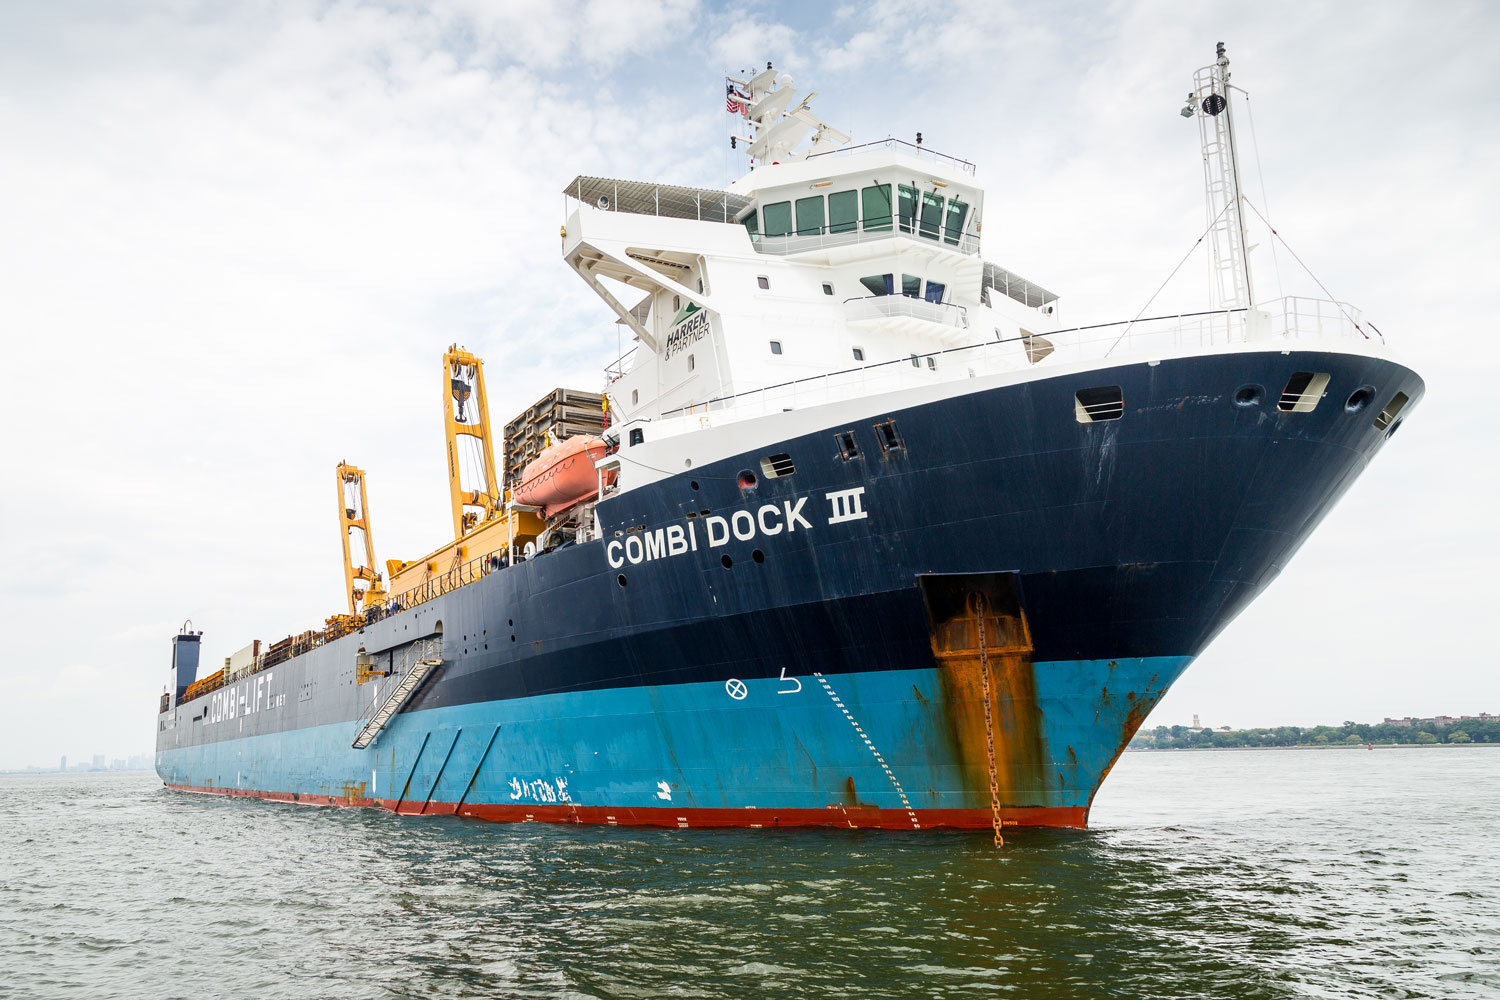 Dosckschiff Combi Dock III